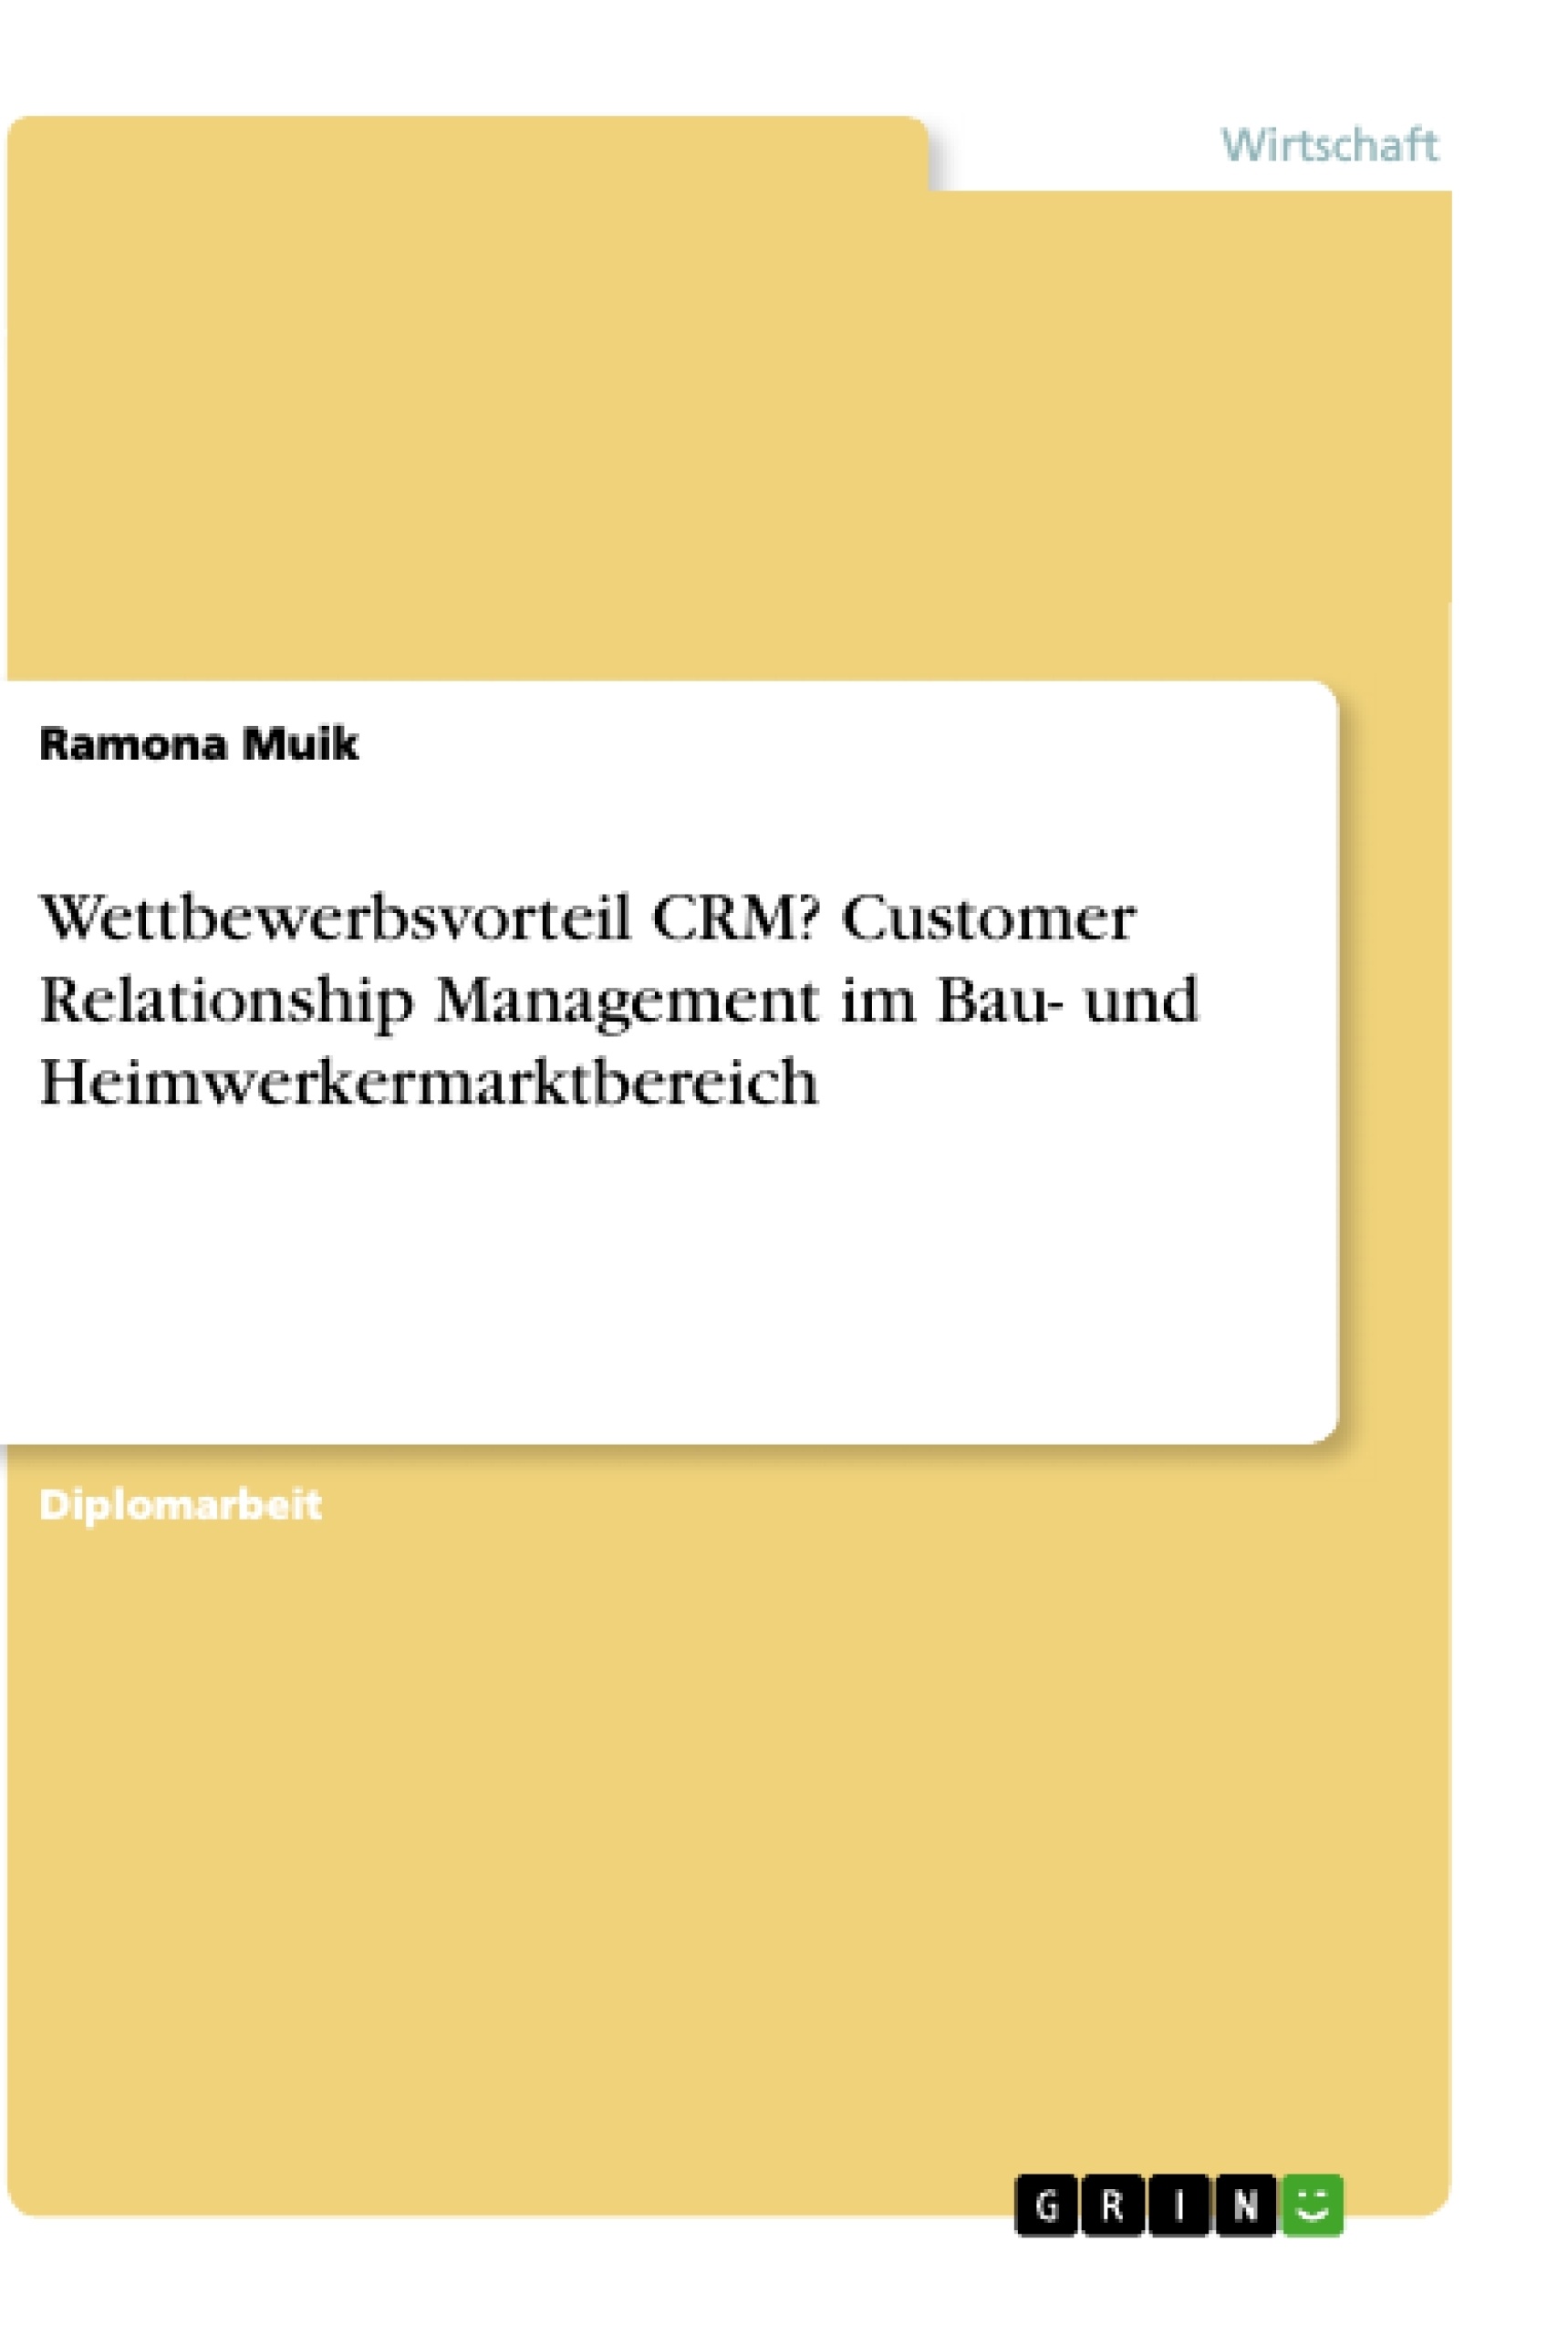 Title: Wettbewerbsvorteil CRM? Customer Relationship Management im Bau- und Heimwerkermarktbereich